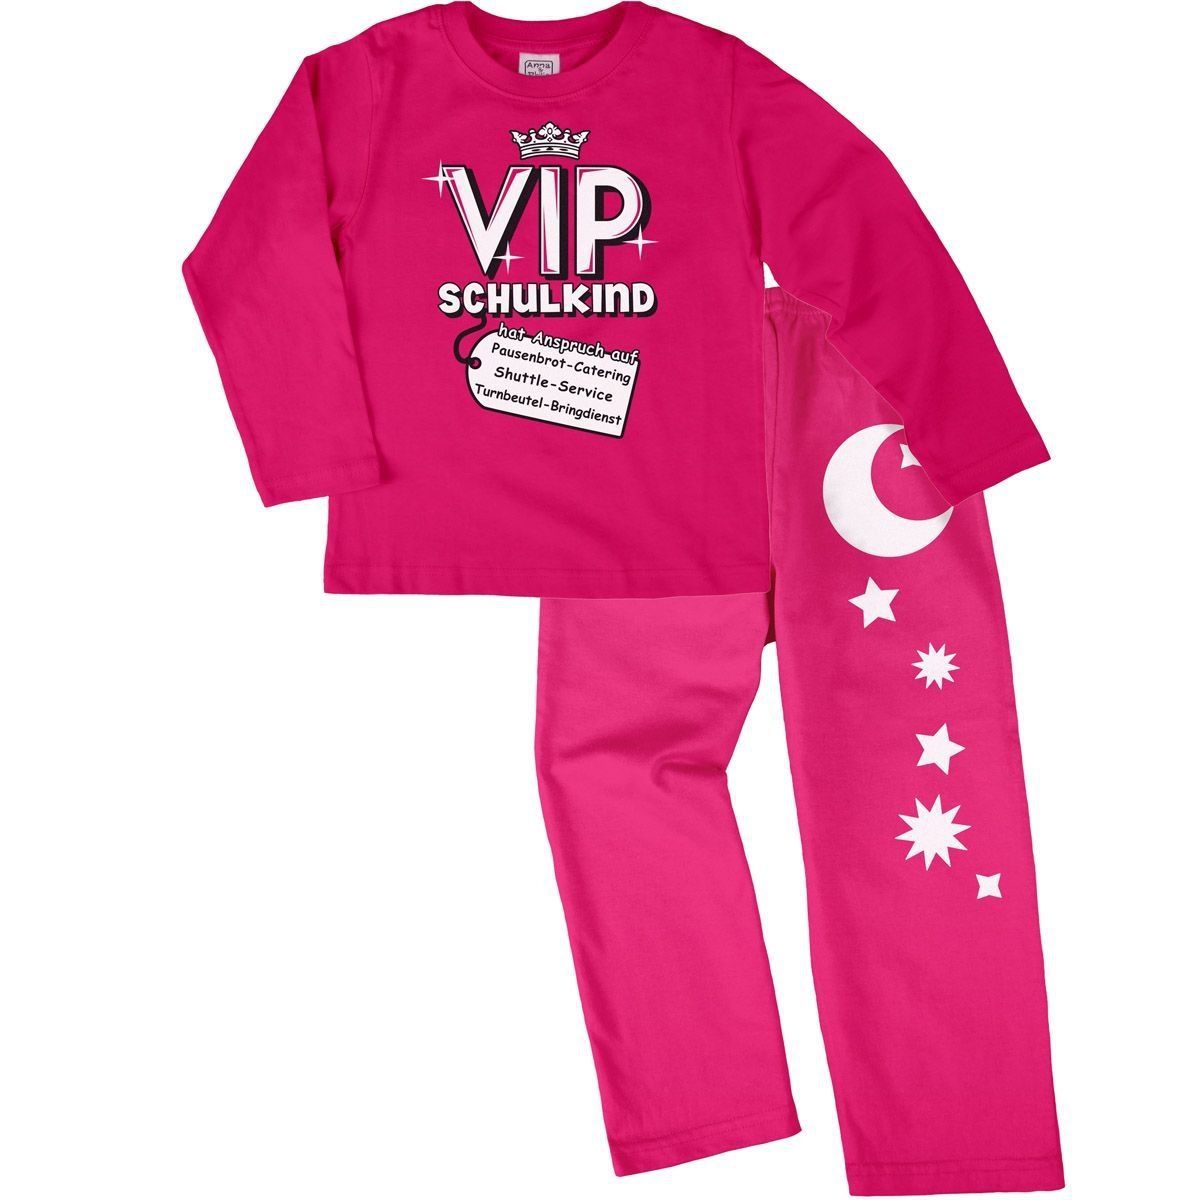 VIP Schulkind Pyjama Set pink / pink 122 / 128